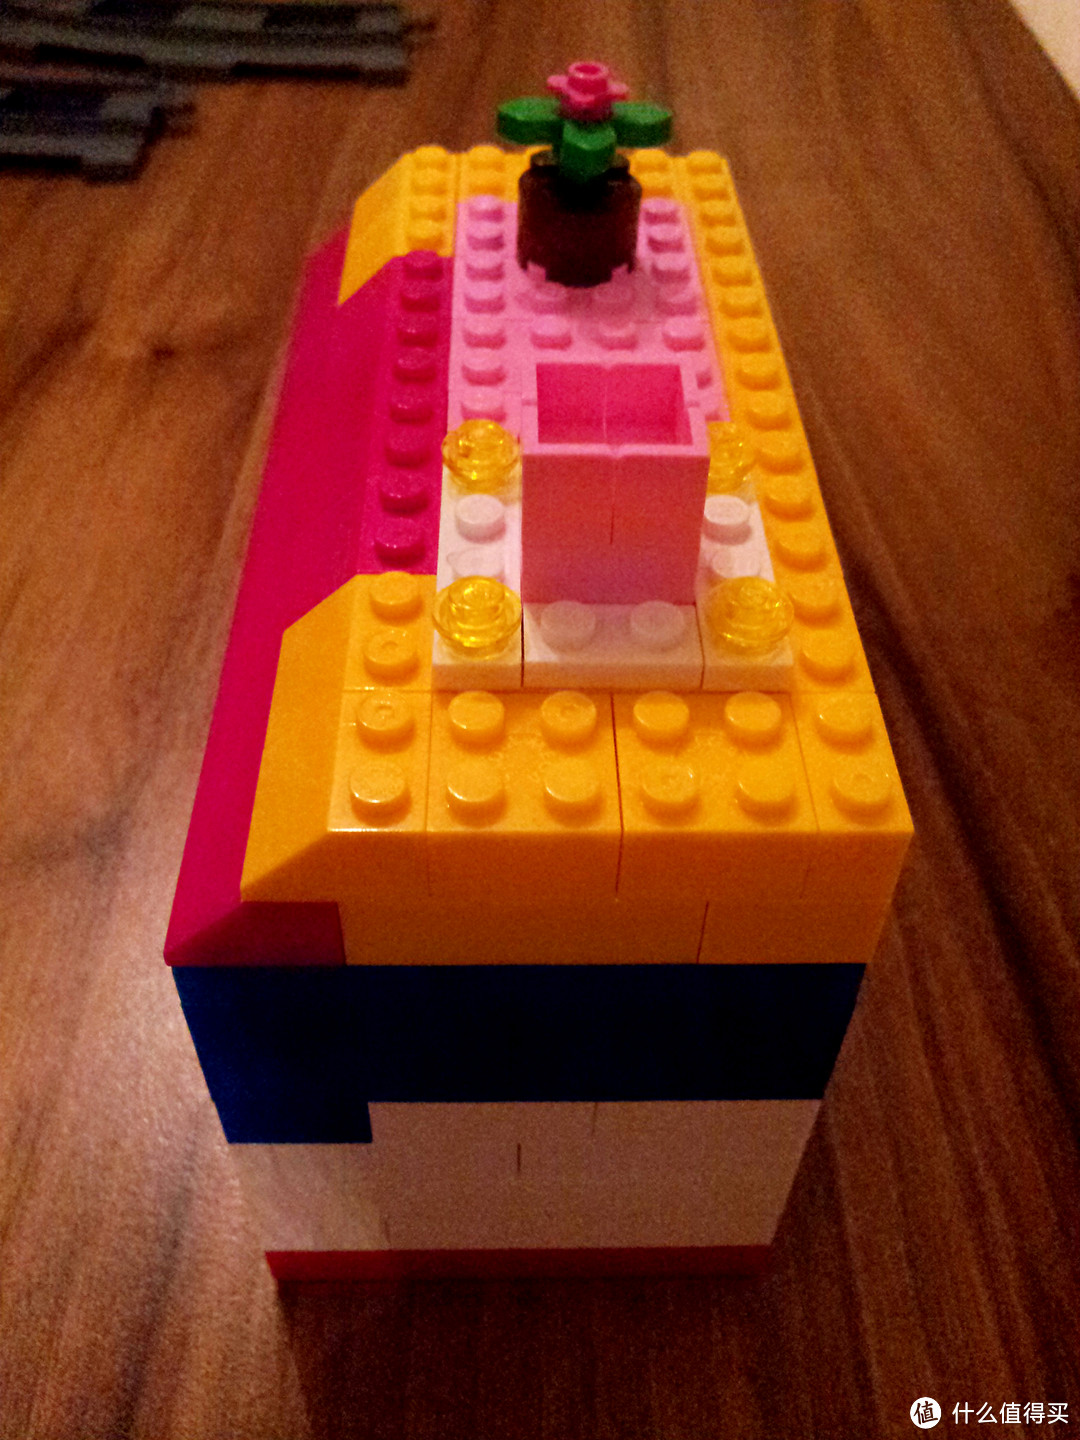 晒一晒 2013下半年我购入的 LEGO 乐高 和美家宝 Mega Bloks 拼插积木